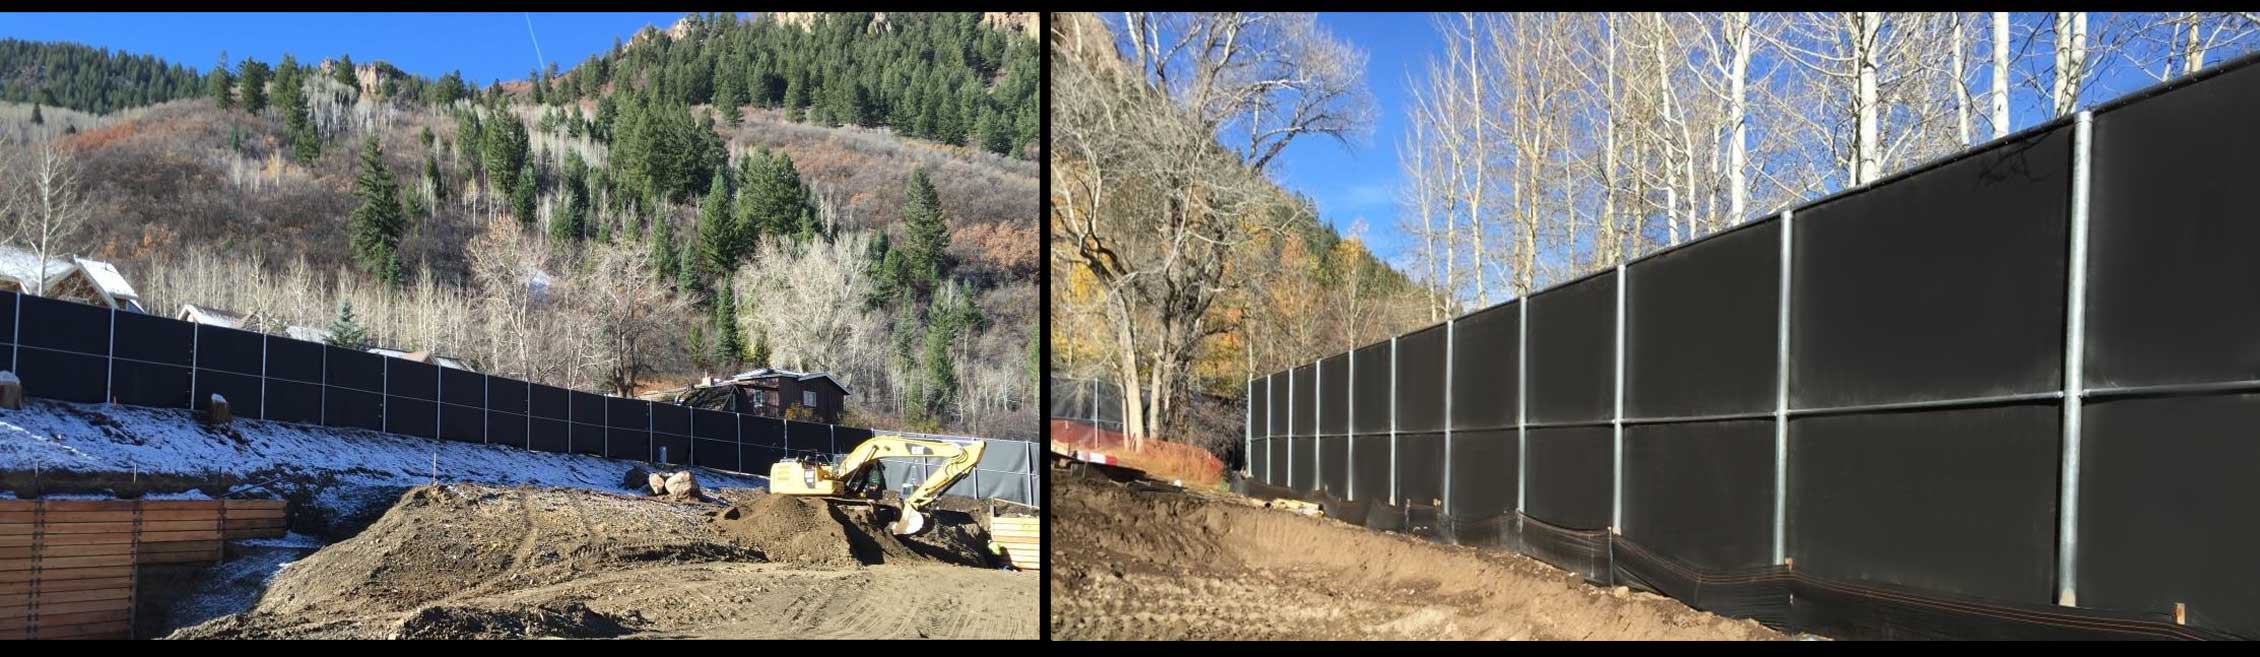 Construction Site Noise Barrier